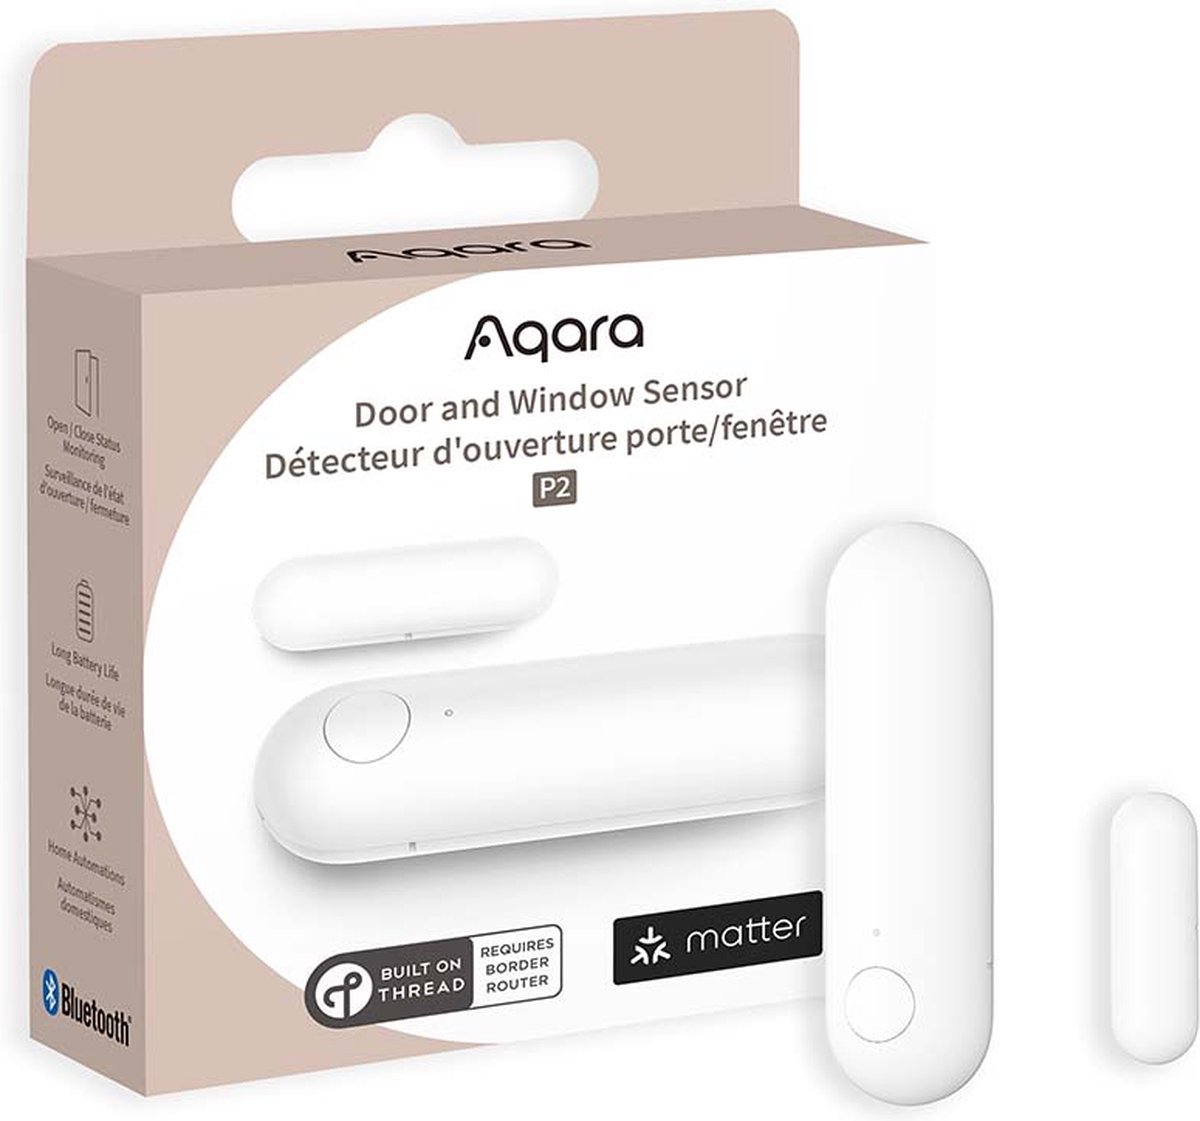 Aqara Door and Window Sensor P2 - Werkt met Matter via Thread - Thread Border Router vereist - AQara